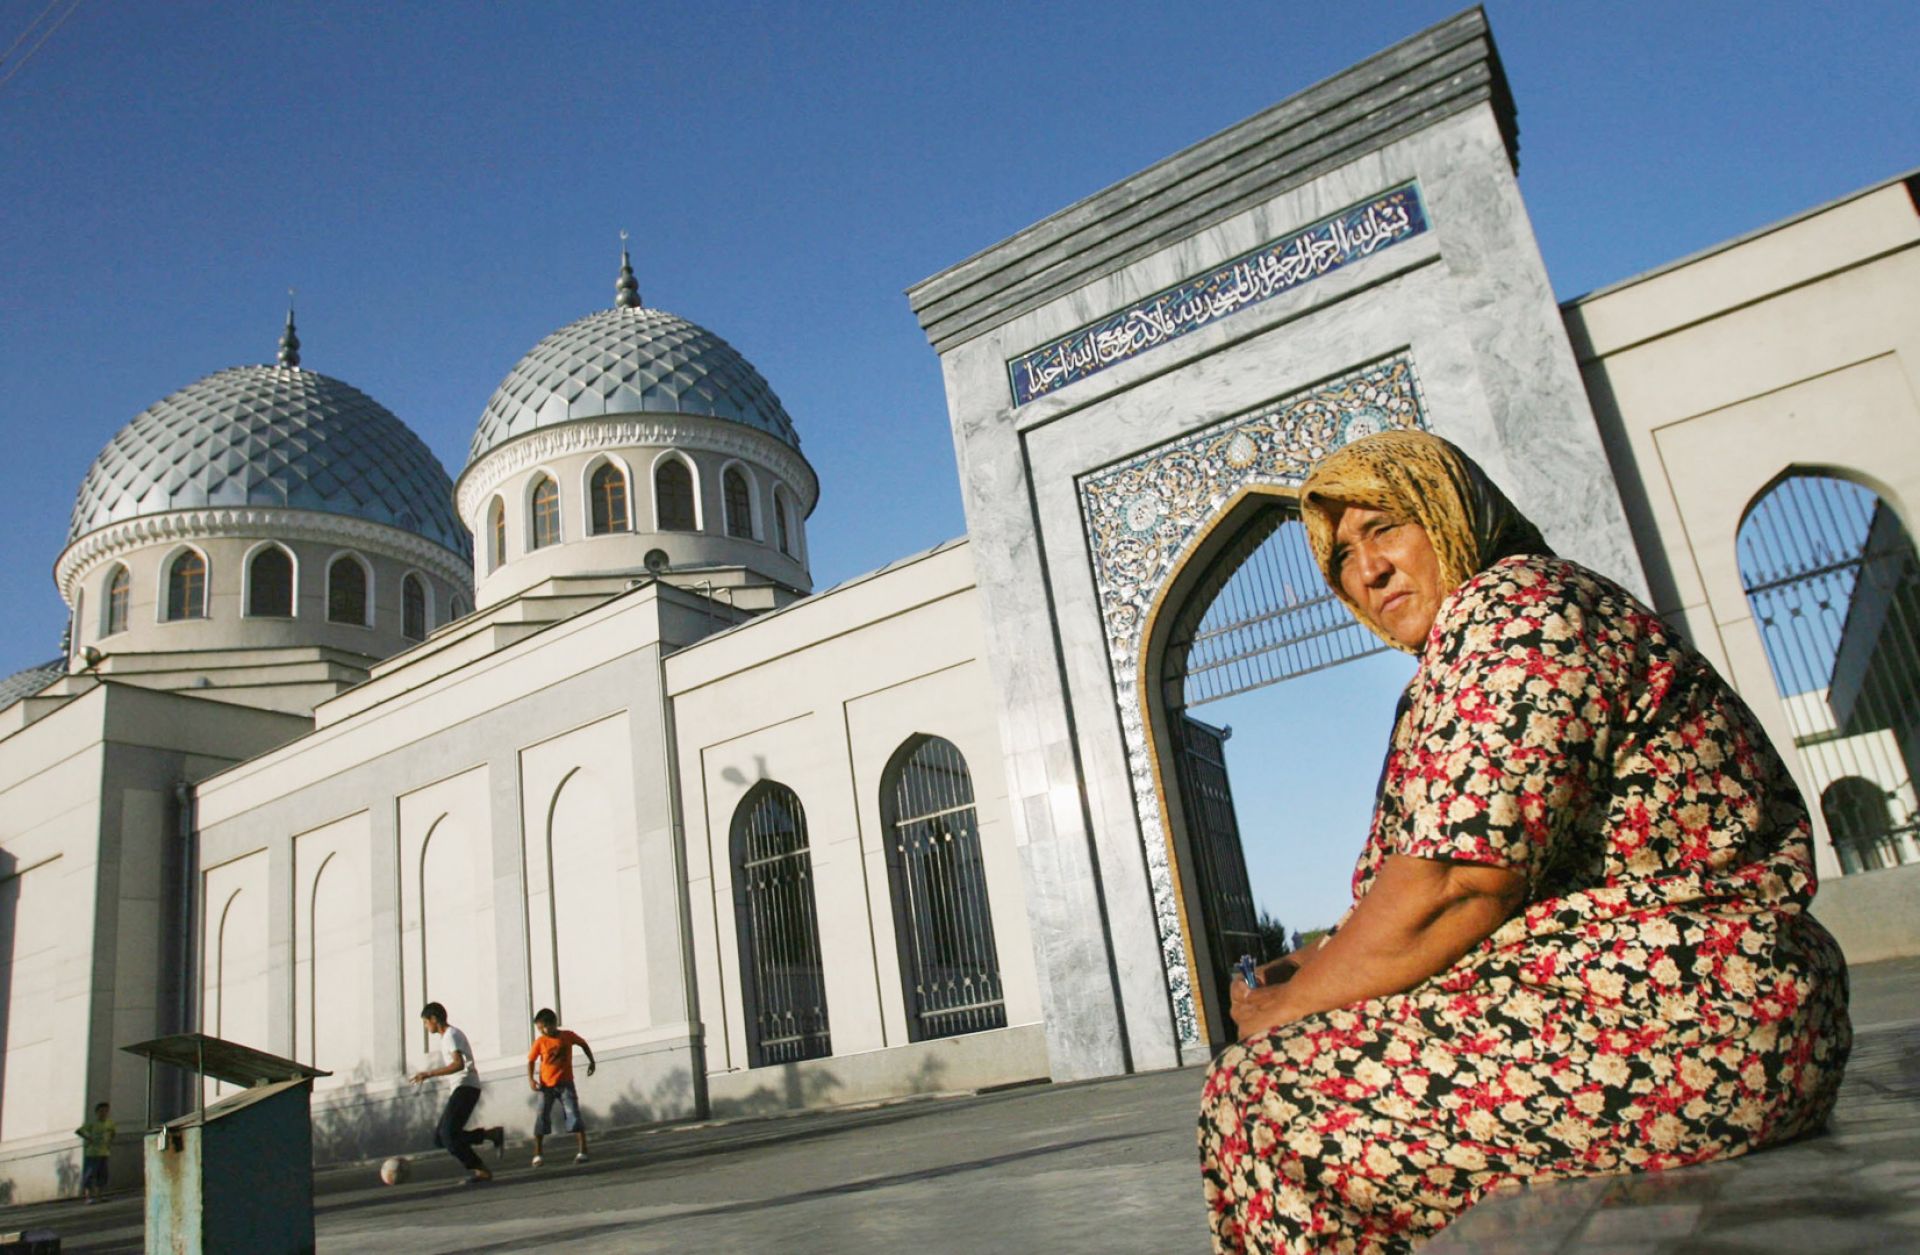 Сколько время в узбекистане спят. Исламская цивилизация. Ташкент мулла. Центр исламской цивилизации в Ташкенте.